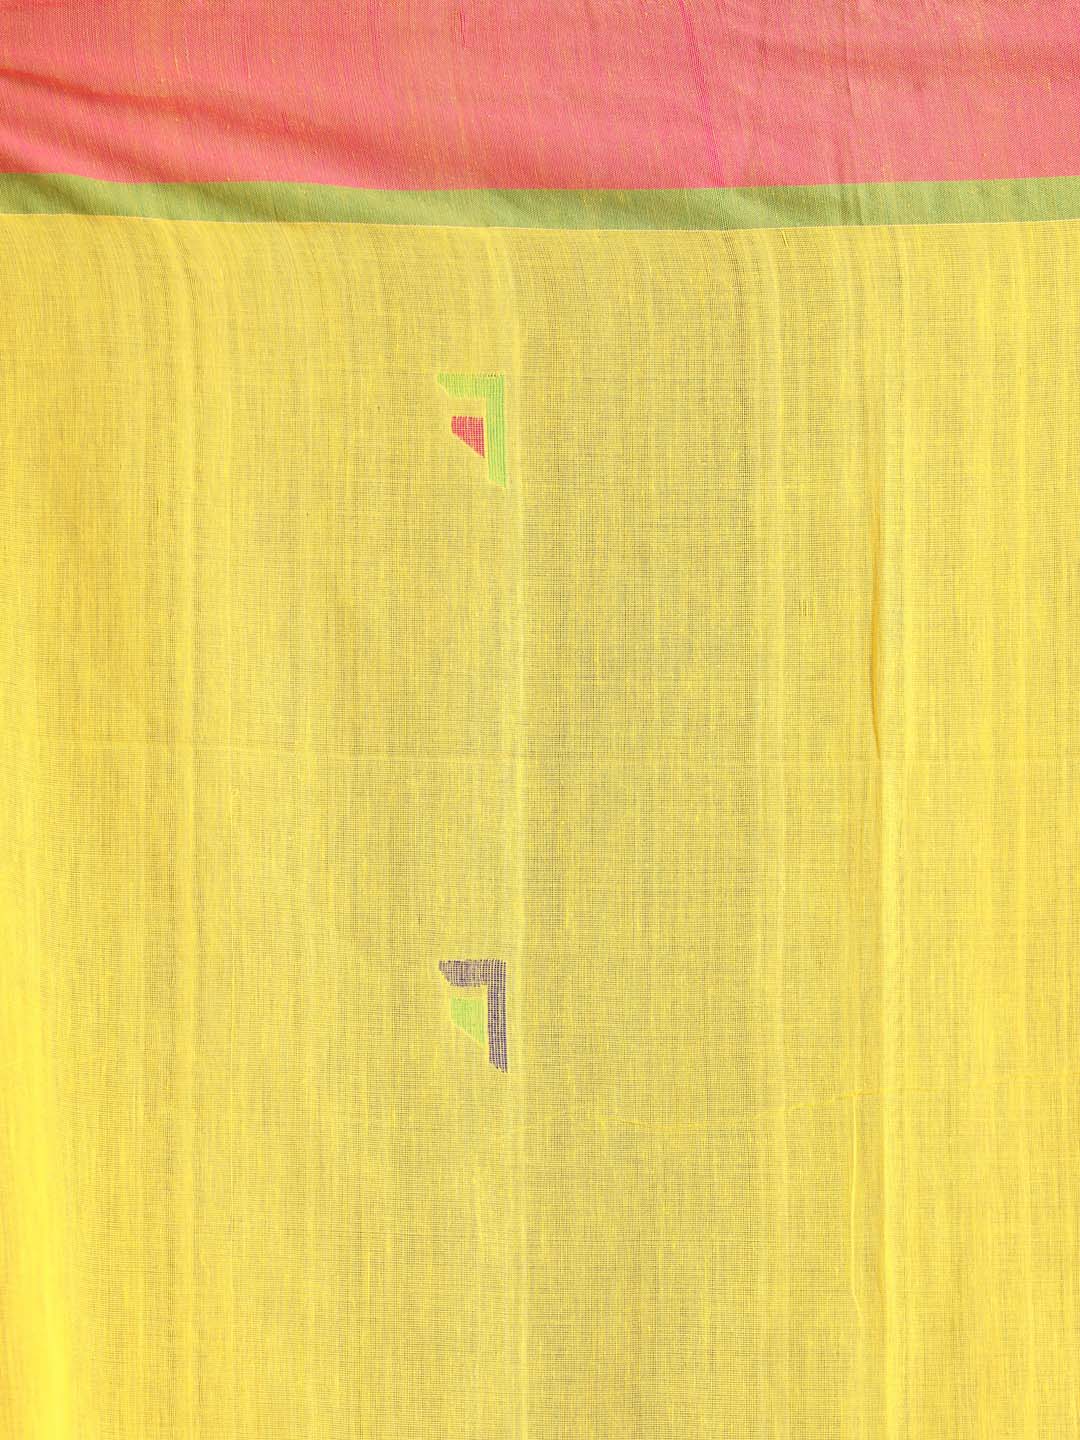 Indethnic Yellow Bengal Handloom Pure Cotton Saree Work Saree - Saree Detail View